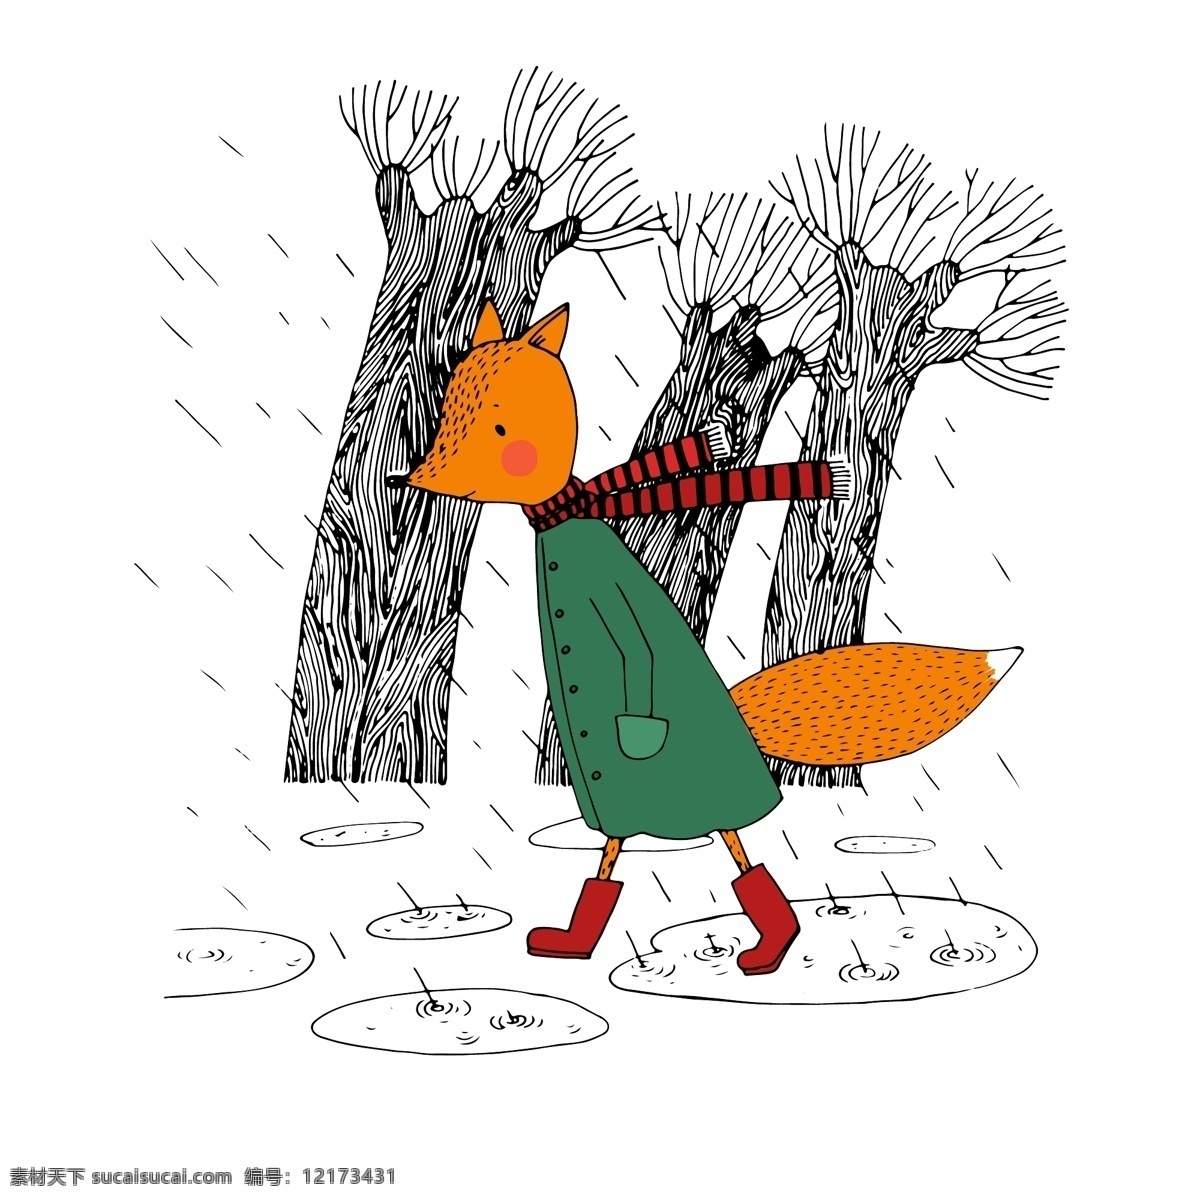 狐狸卡通矢量 下雨天 森林 围巾 狐狸 线描手绘 卡通动物 卡通形象 卡通插画 绘画艺术 插画 矢量素材 卡通绘画 卡通设计